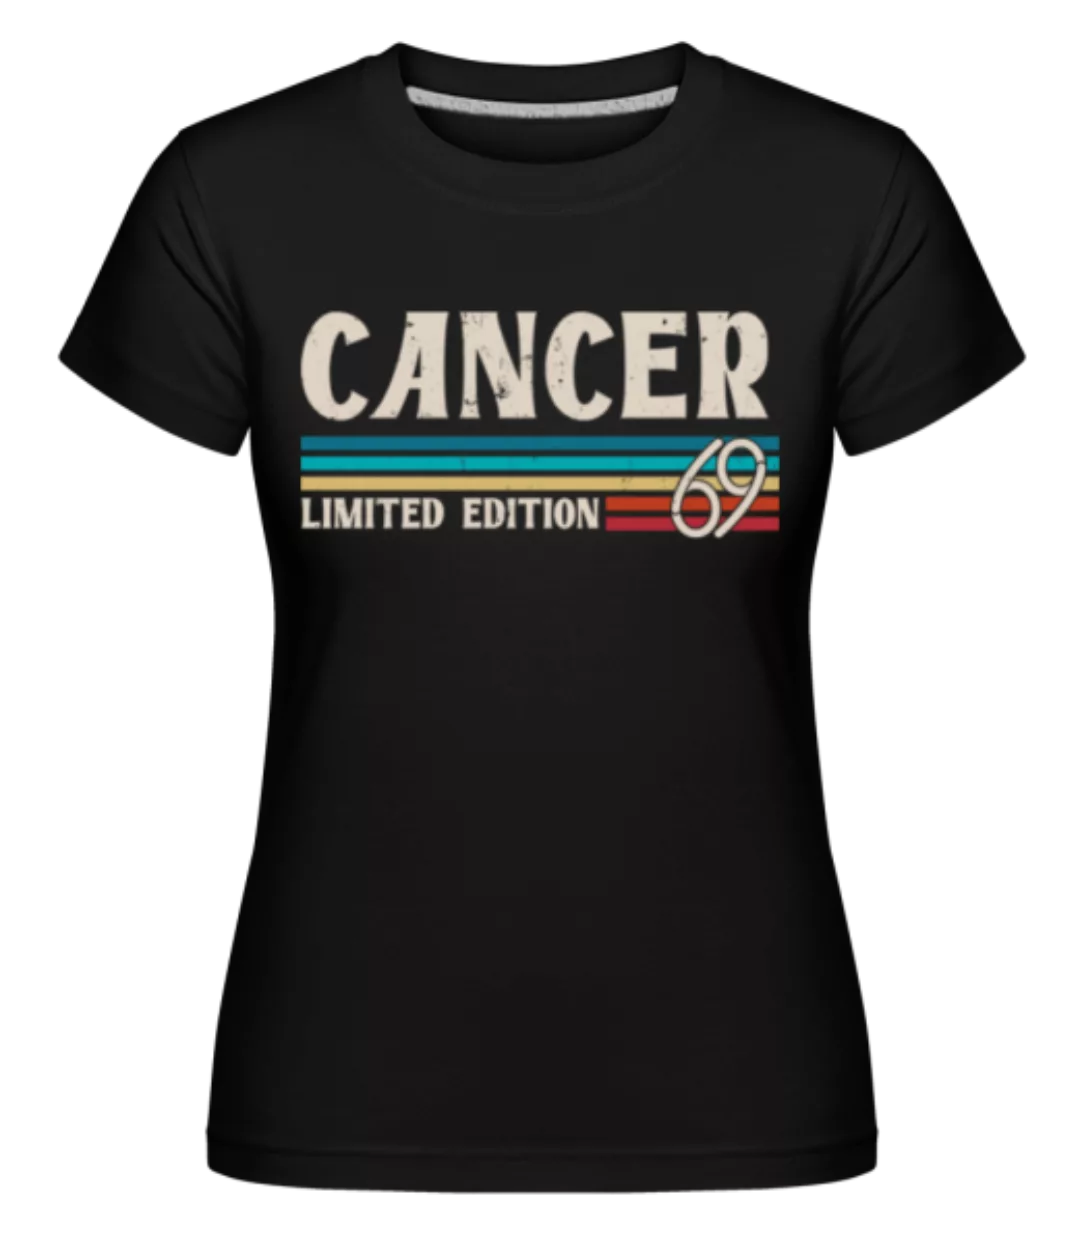 Sternzeichen Cancer Limited · Shirtinator Frauen T-Shirt günstig online kaufen